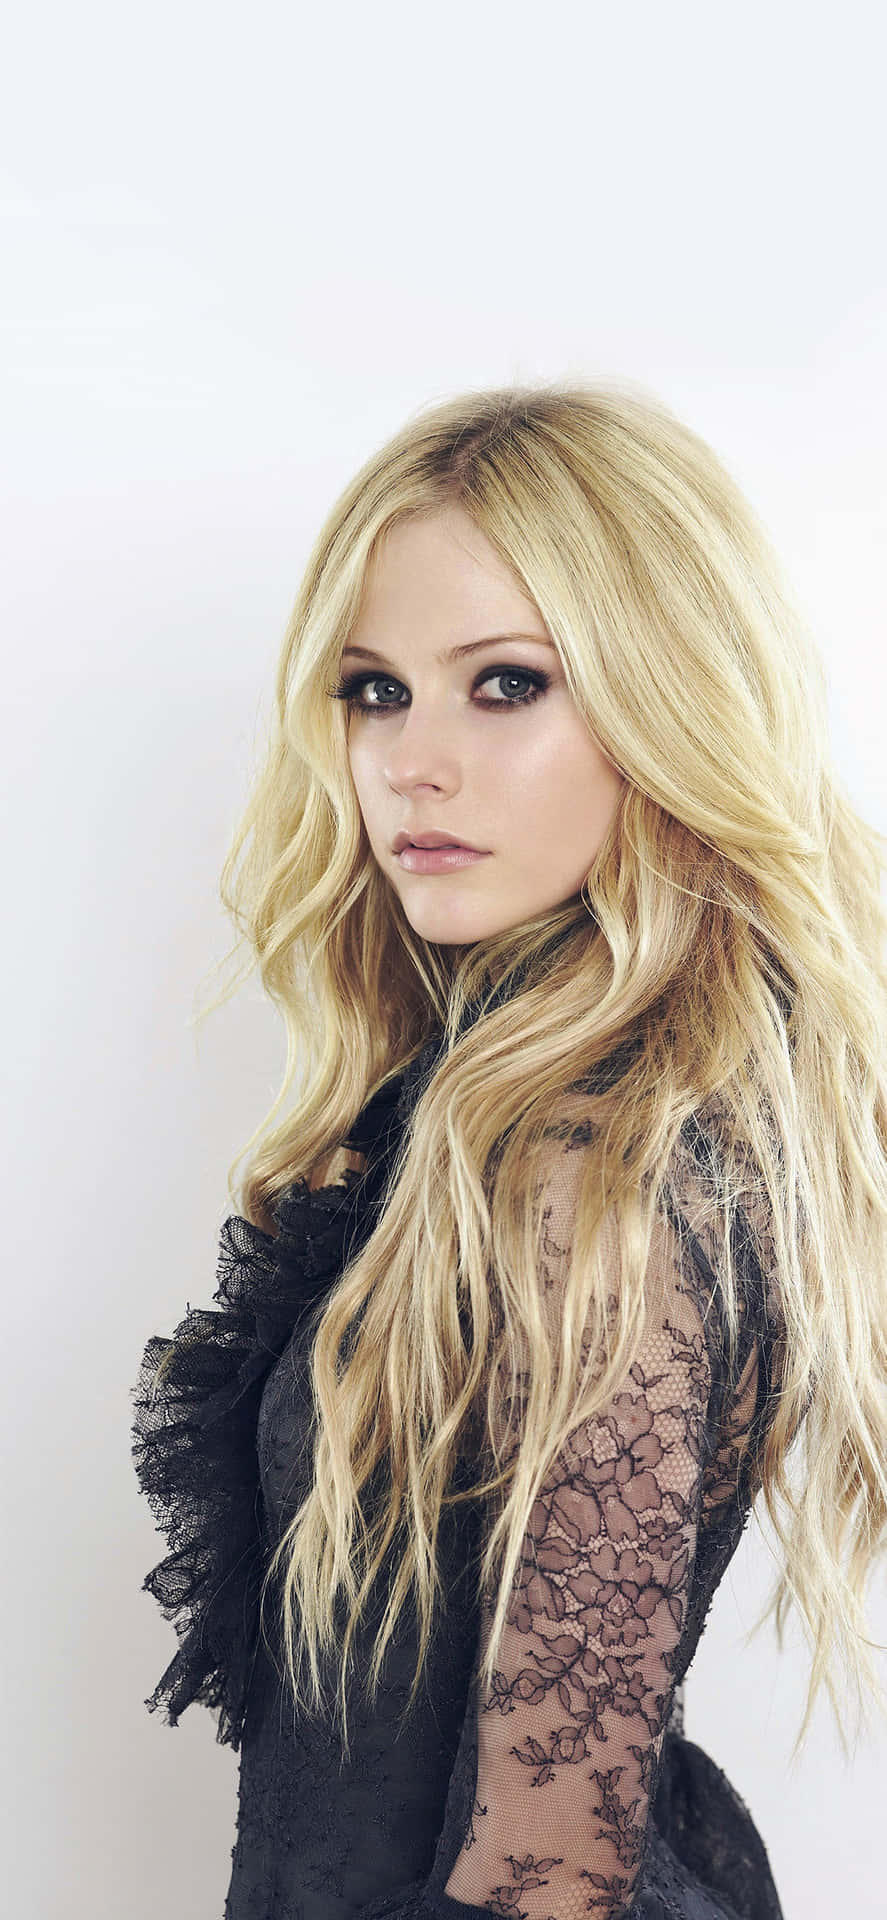 Avril Lavigne on stage